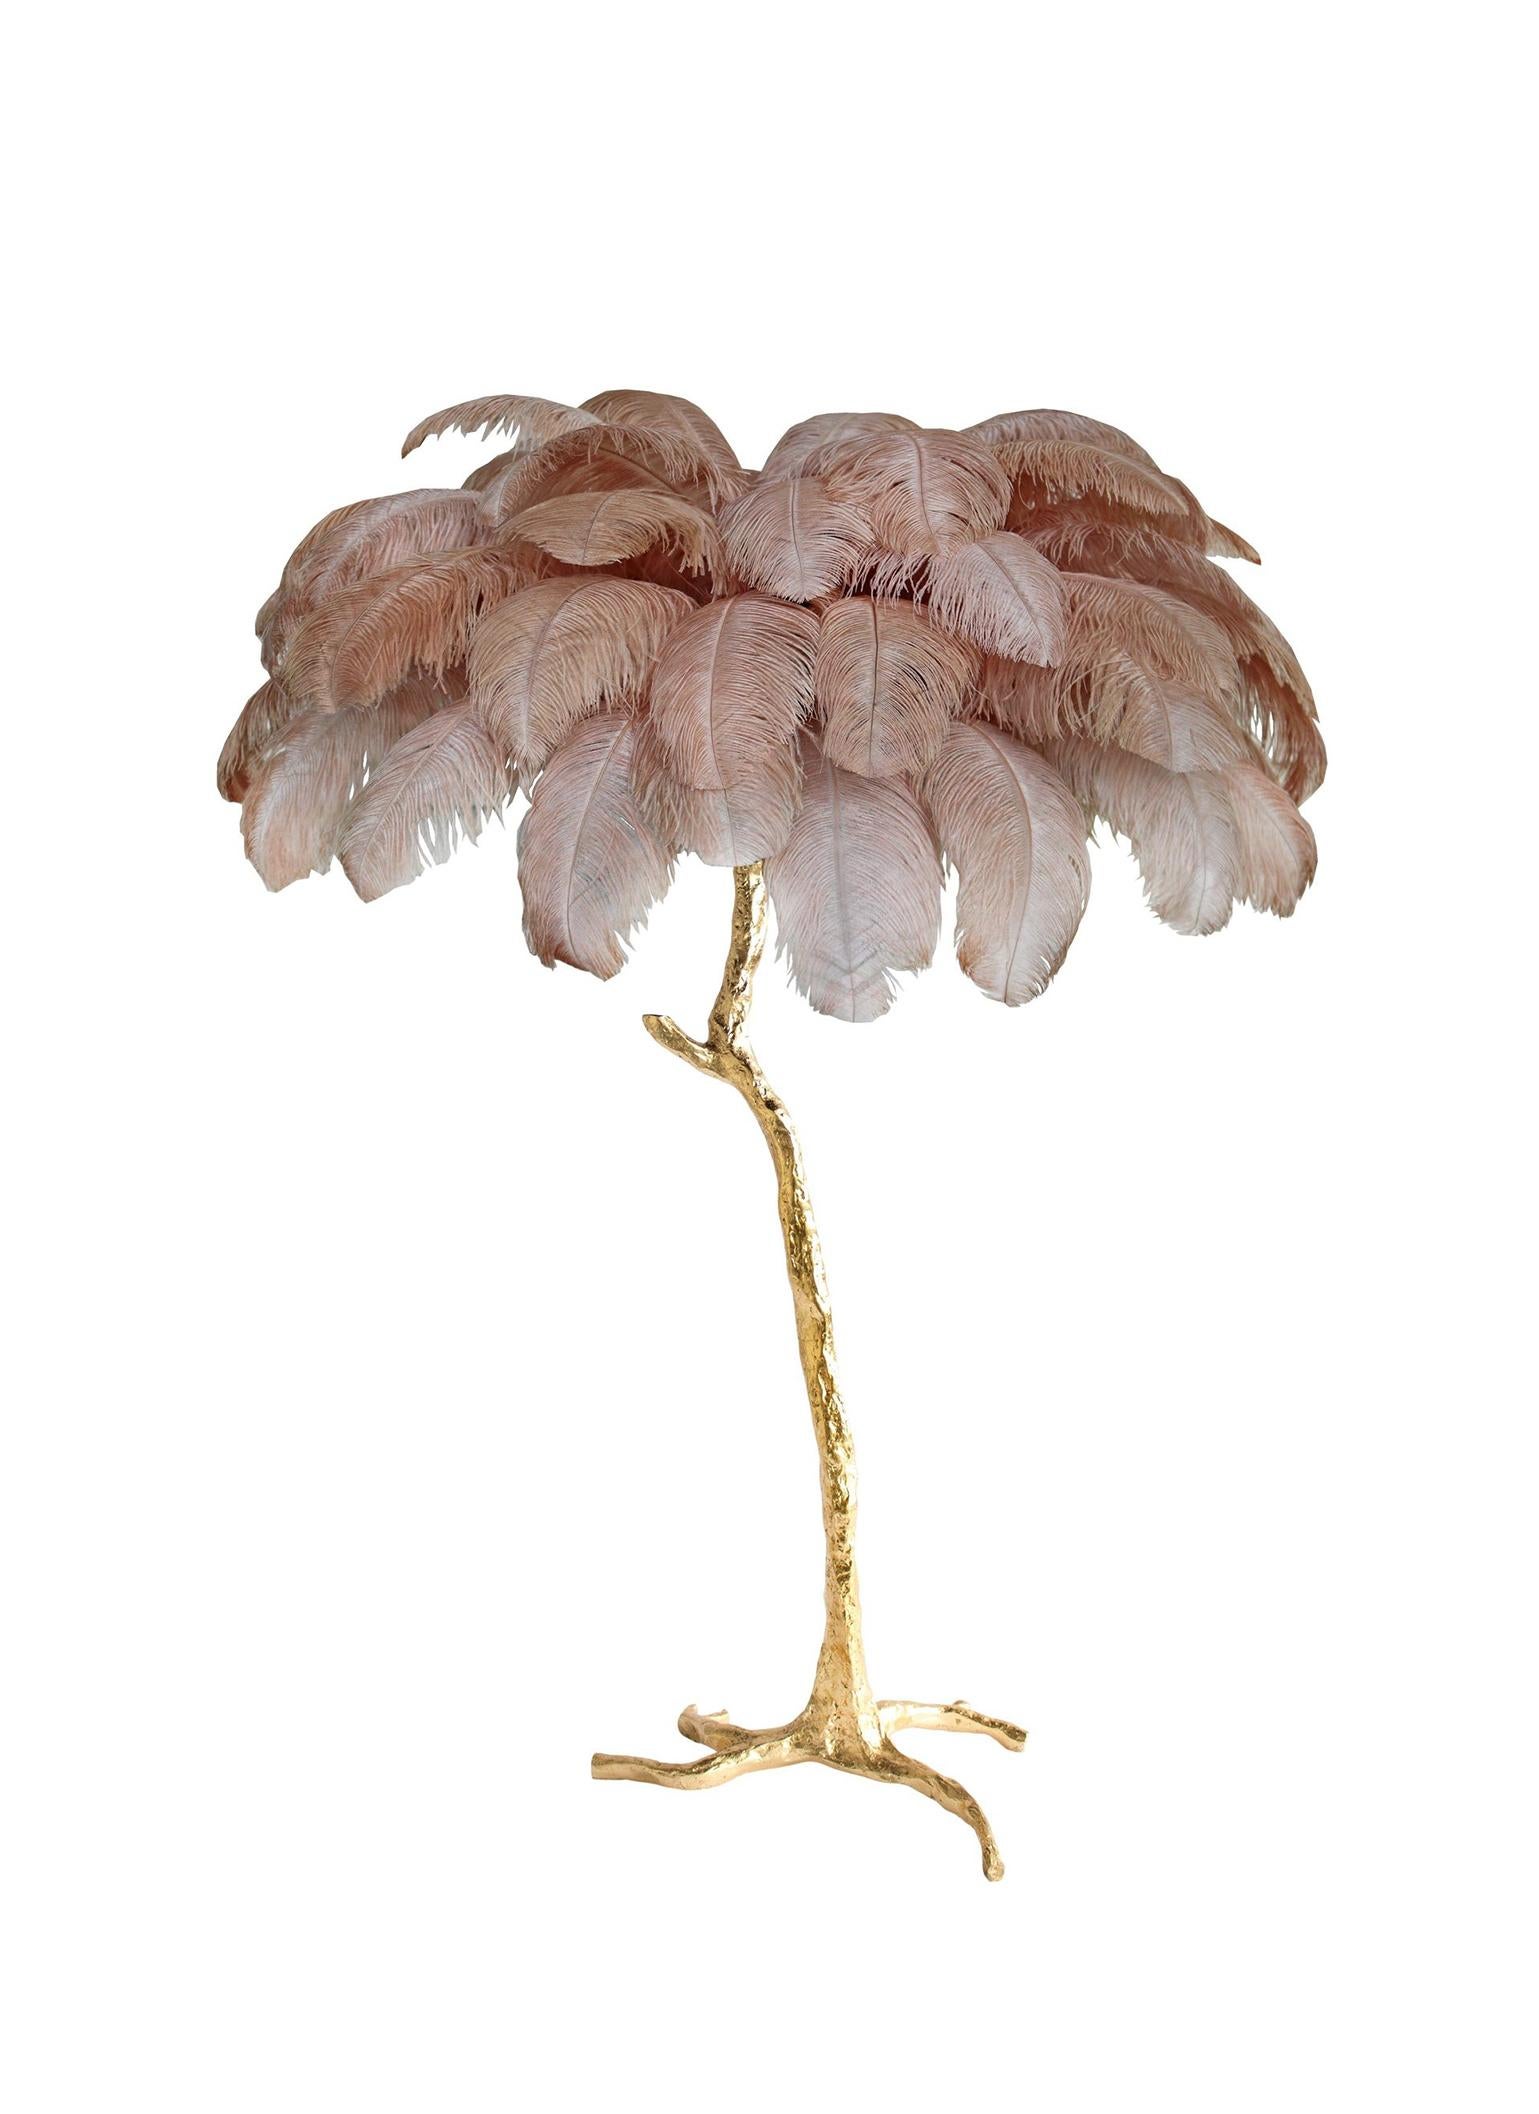 Le lampadaire Feather, pièce d'édition de A Modern Grand Tour.
Un palmier lumineux, resplendissant avec un feuillage de plumes d'autruche exquis, le lampadaire en plumes occupe le devant de la scène dans n'importe quel décor luxueux et apporte la